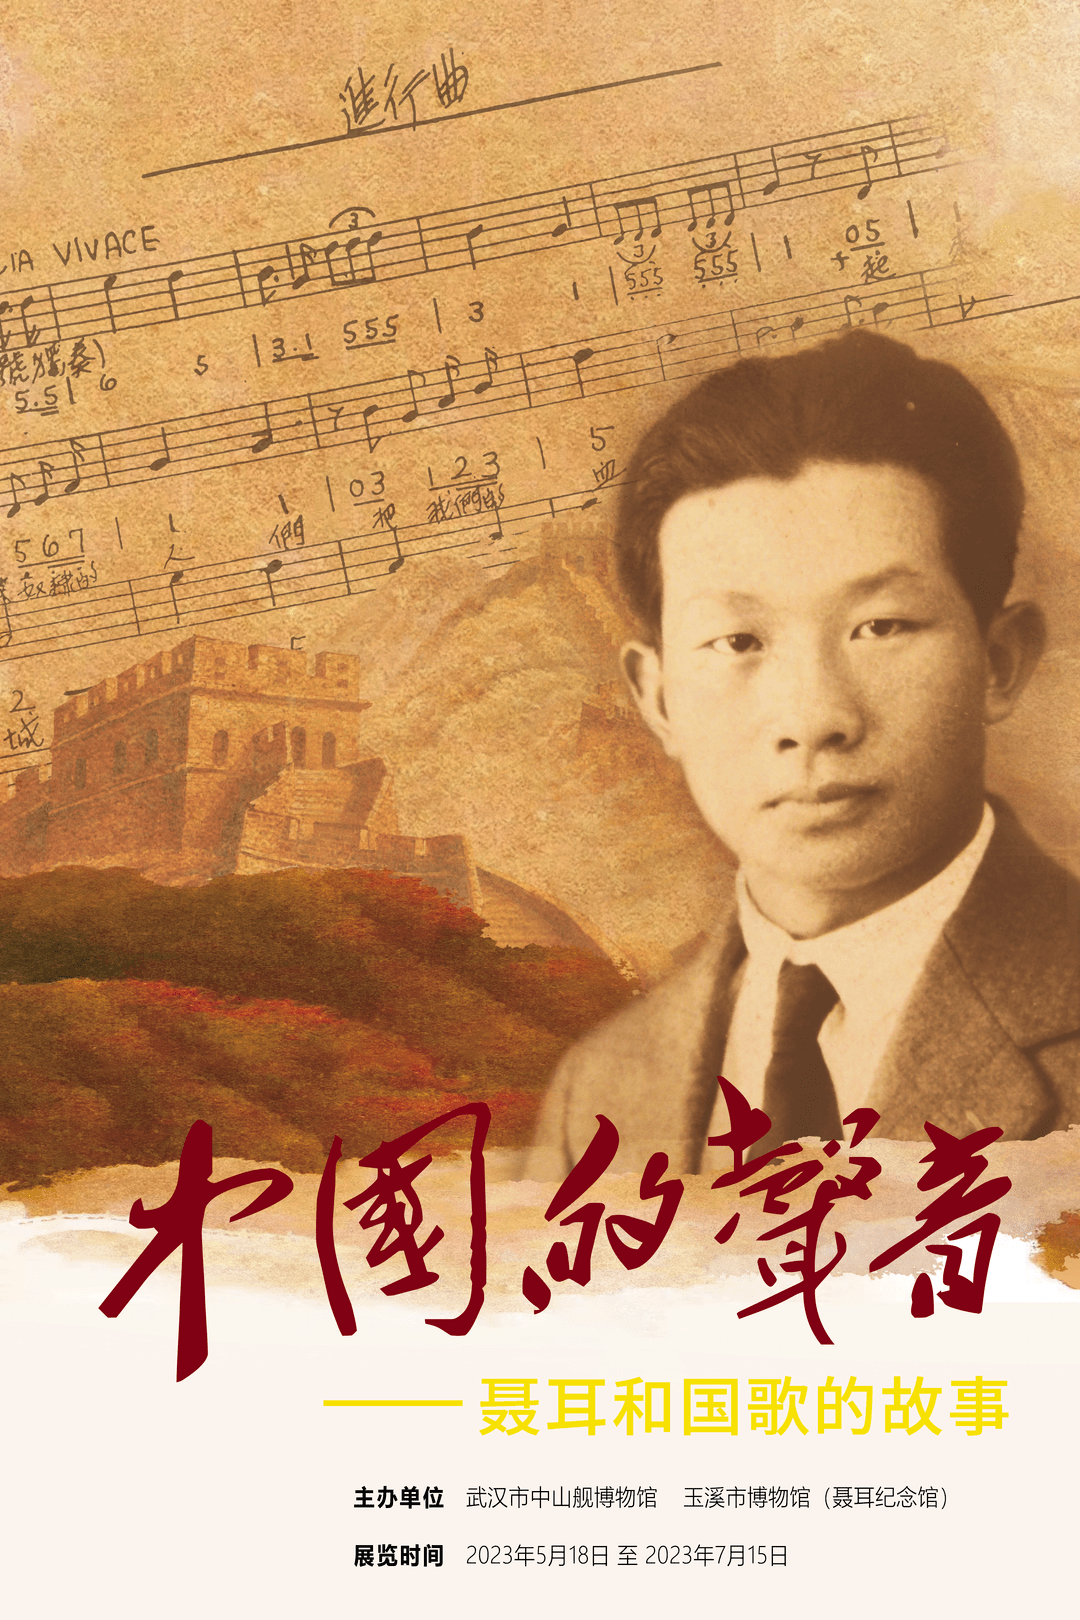 中国的声音——聂耳和国歌的故事展在武汉市中山舰博物馆开展